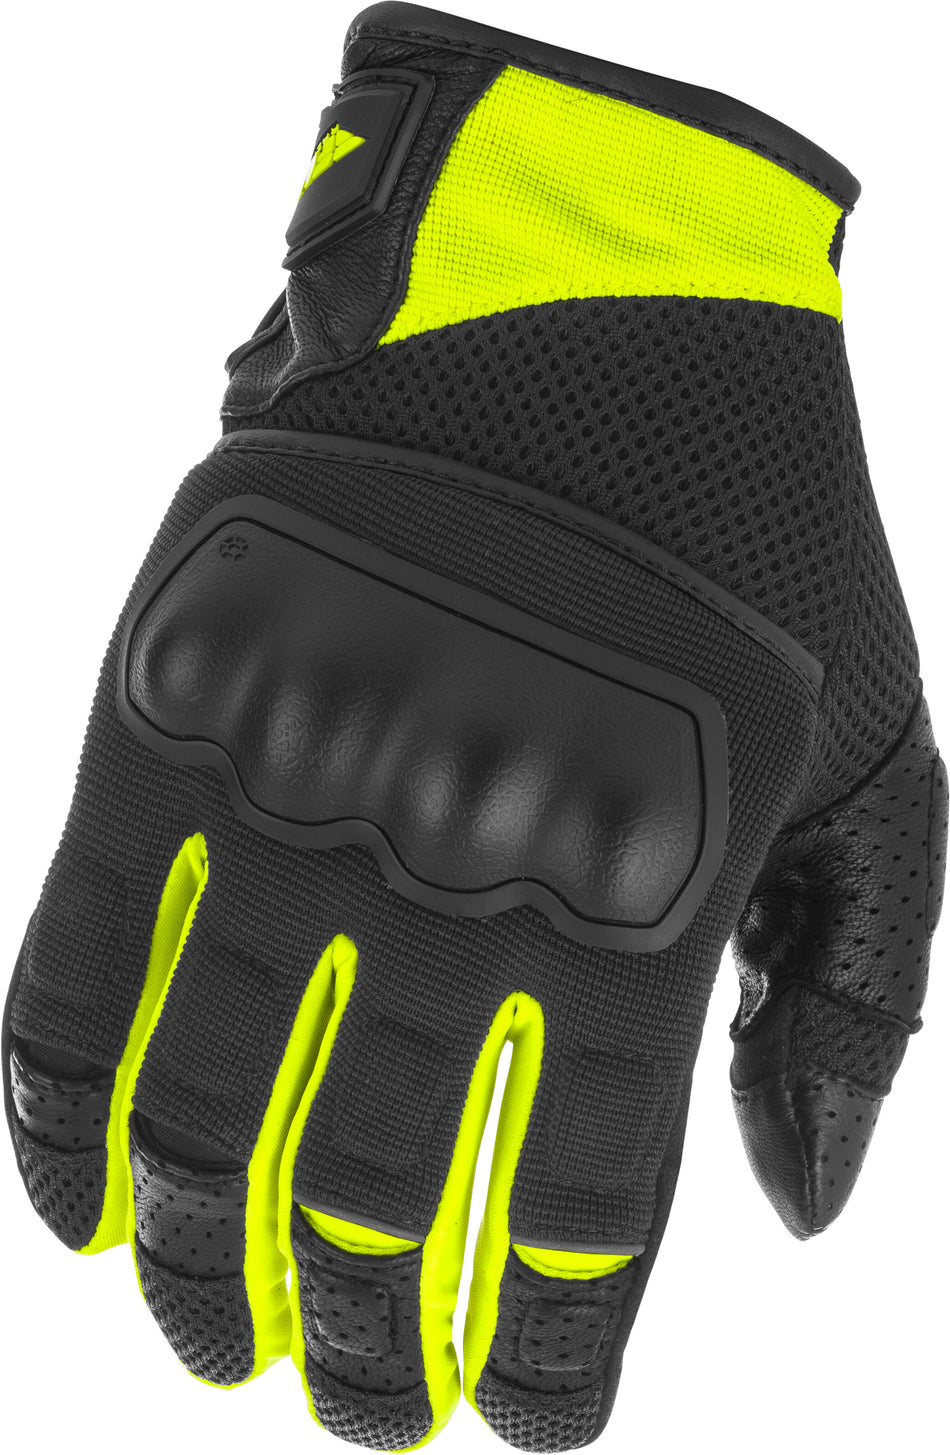 FLY RACING Coolpro Force Gloves Black/Hi-Vis Lg 476-4123L